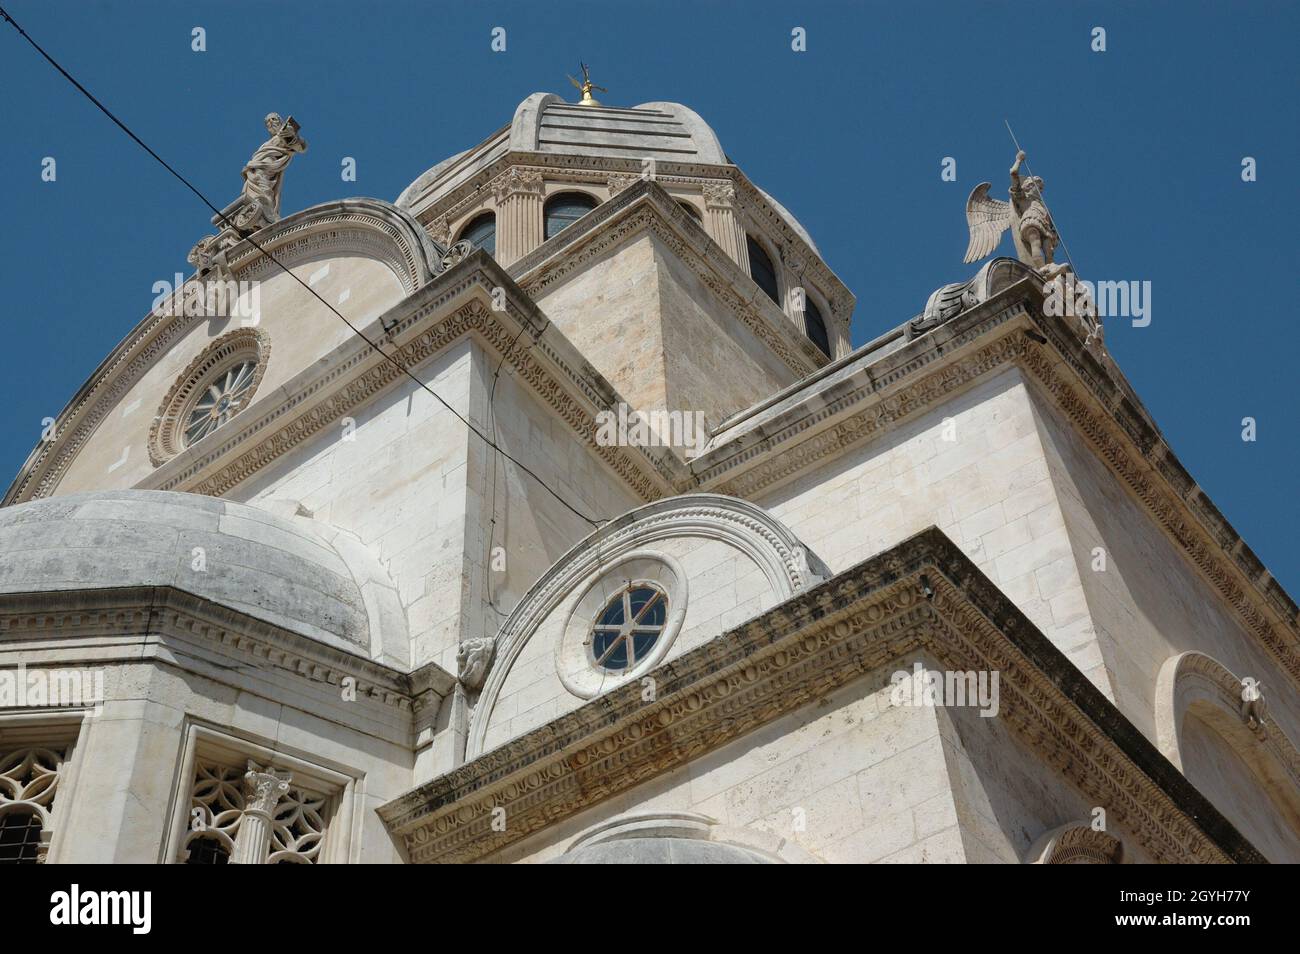 Šibenik - Cattedrale di St James / Katedrala sv. Jakova - Città vecchia nella Dalmazia centrale, costa adriatica, Croazia Foto Stock